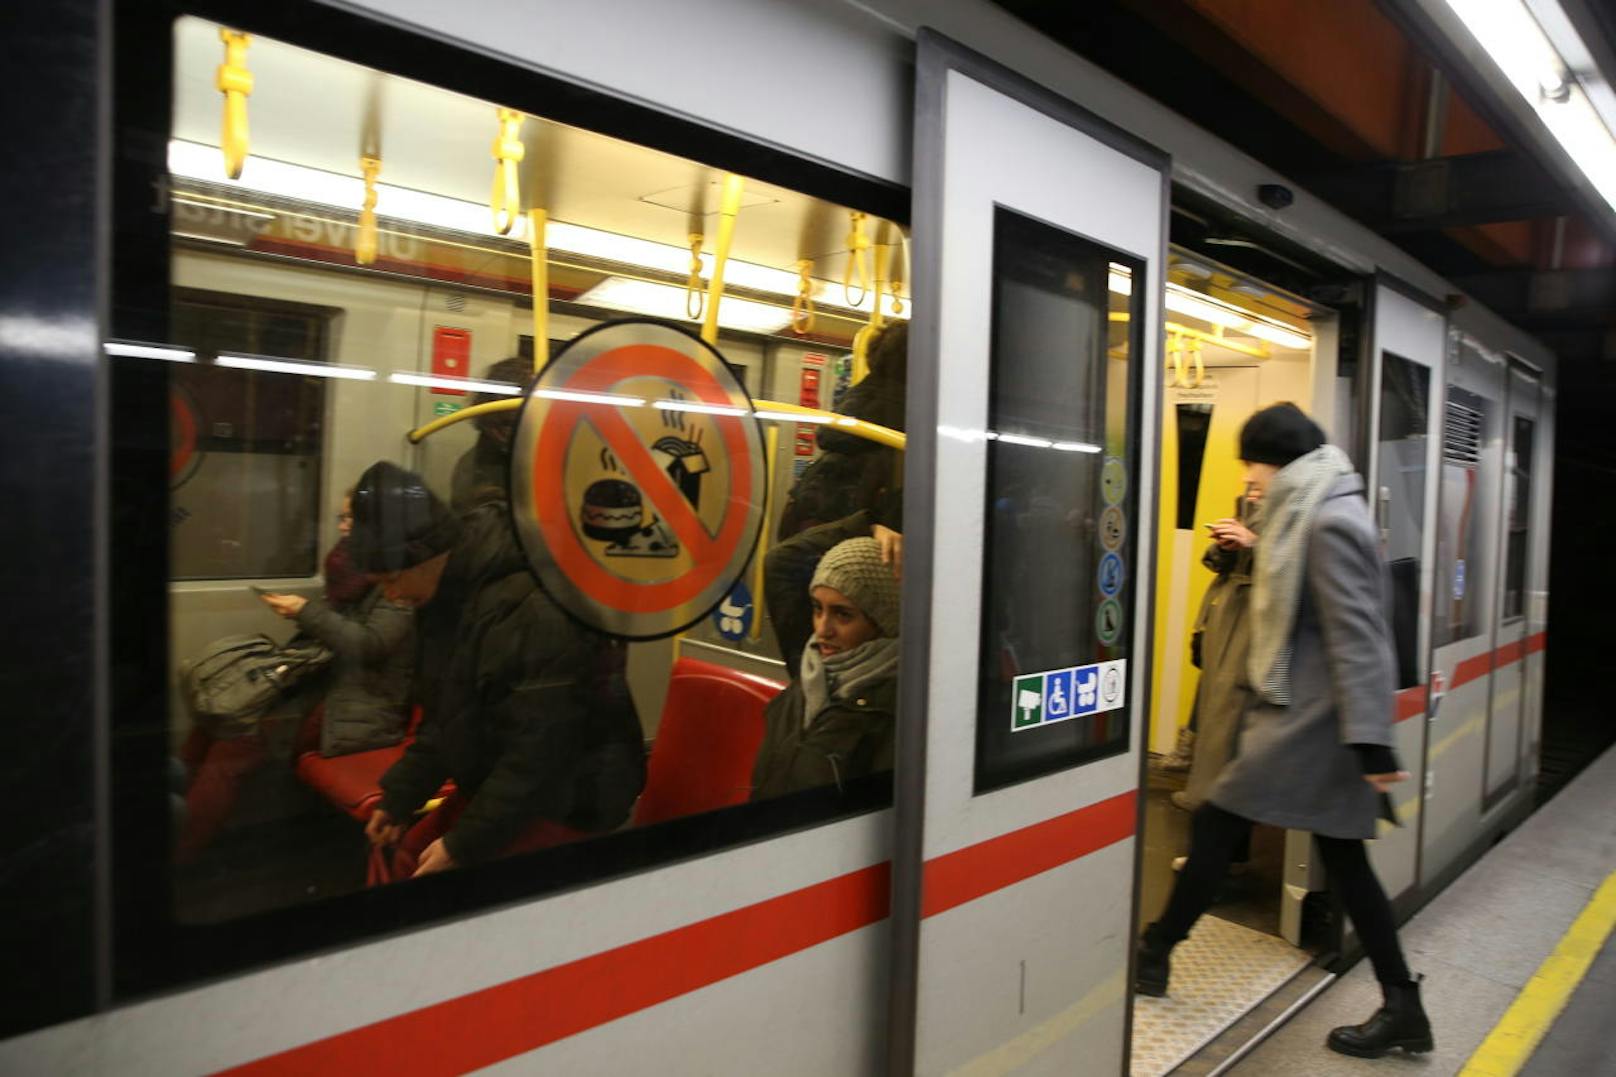 Seit Dienstag gilt das Essverbot auf allen U-Bahn-Linien. "Heute" machte einen Lokalaugenschein.